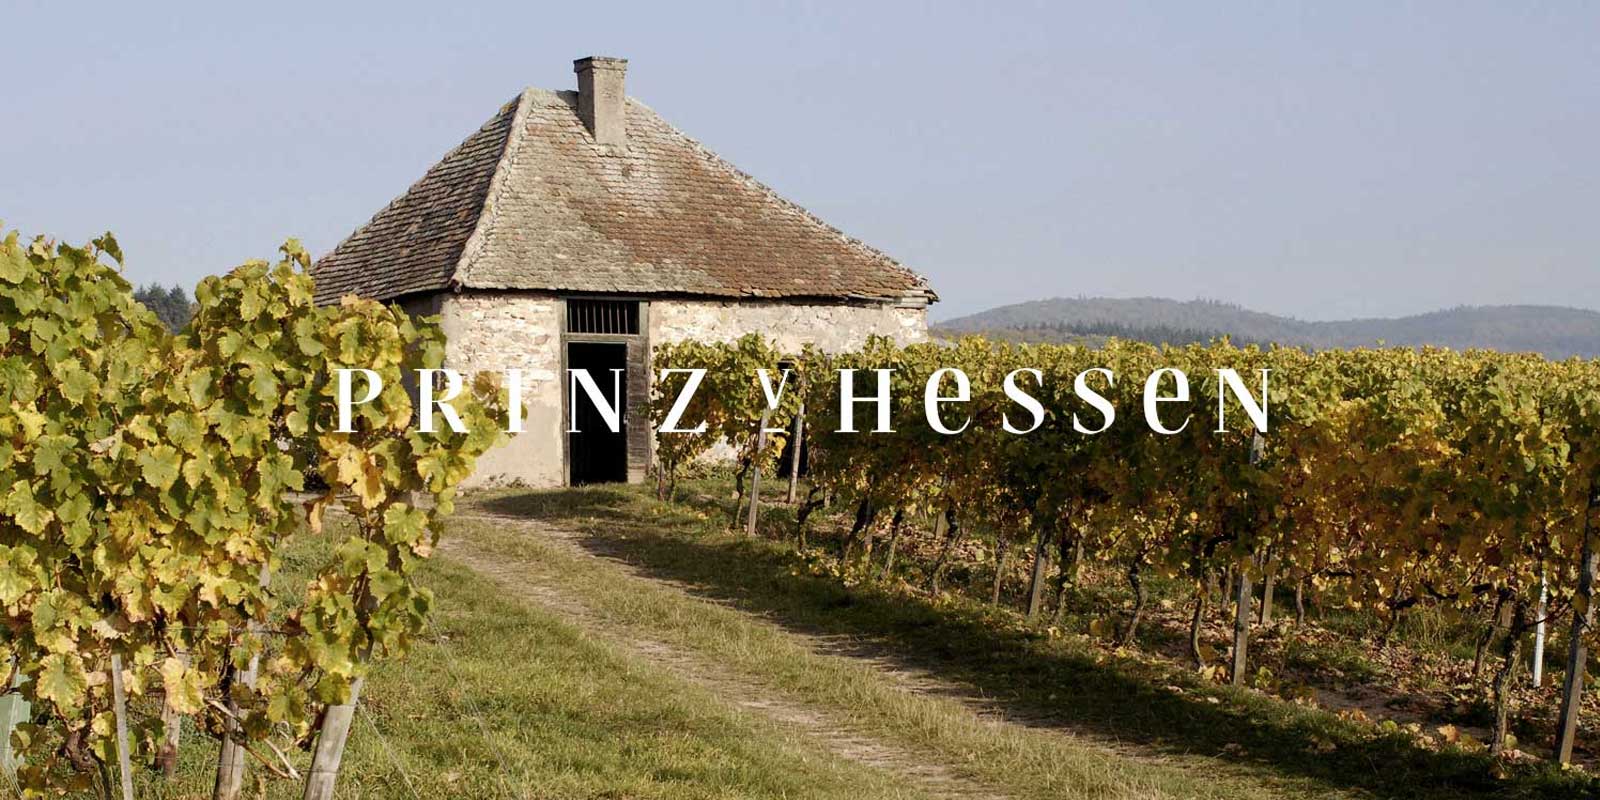 Domaine viticole Prince de Hesse - Region viticole du Rheingau La cave PRINZ VON HESSEN a Johannisberg dans le Rheingau est l`un des producteurs de Riesling les plus remarquables d`Allemagne et est membre fondateur du VDP de l`association regionale du Rheingau. De nombreuses reconnaissances en Allemagne et a l`etranger refletent la cave PRINZ VON HESSEN, qui se situe au plus haut niveau. Les vins et vins mousseux de la cave PRINZ VON HESSEN ont remporte de nombreux prix et recu de grandes recompenses internationales.